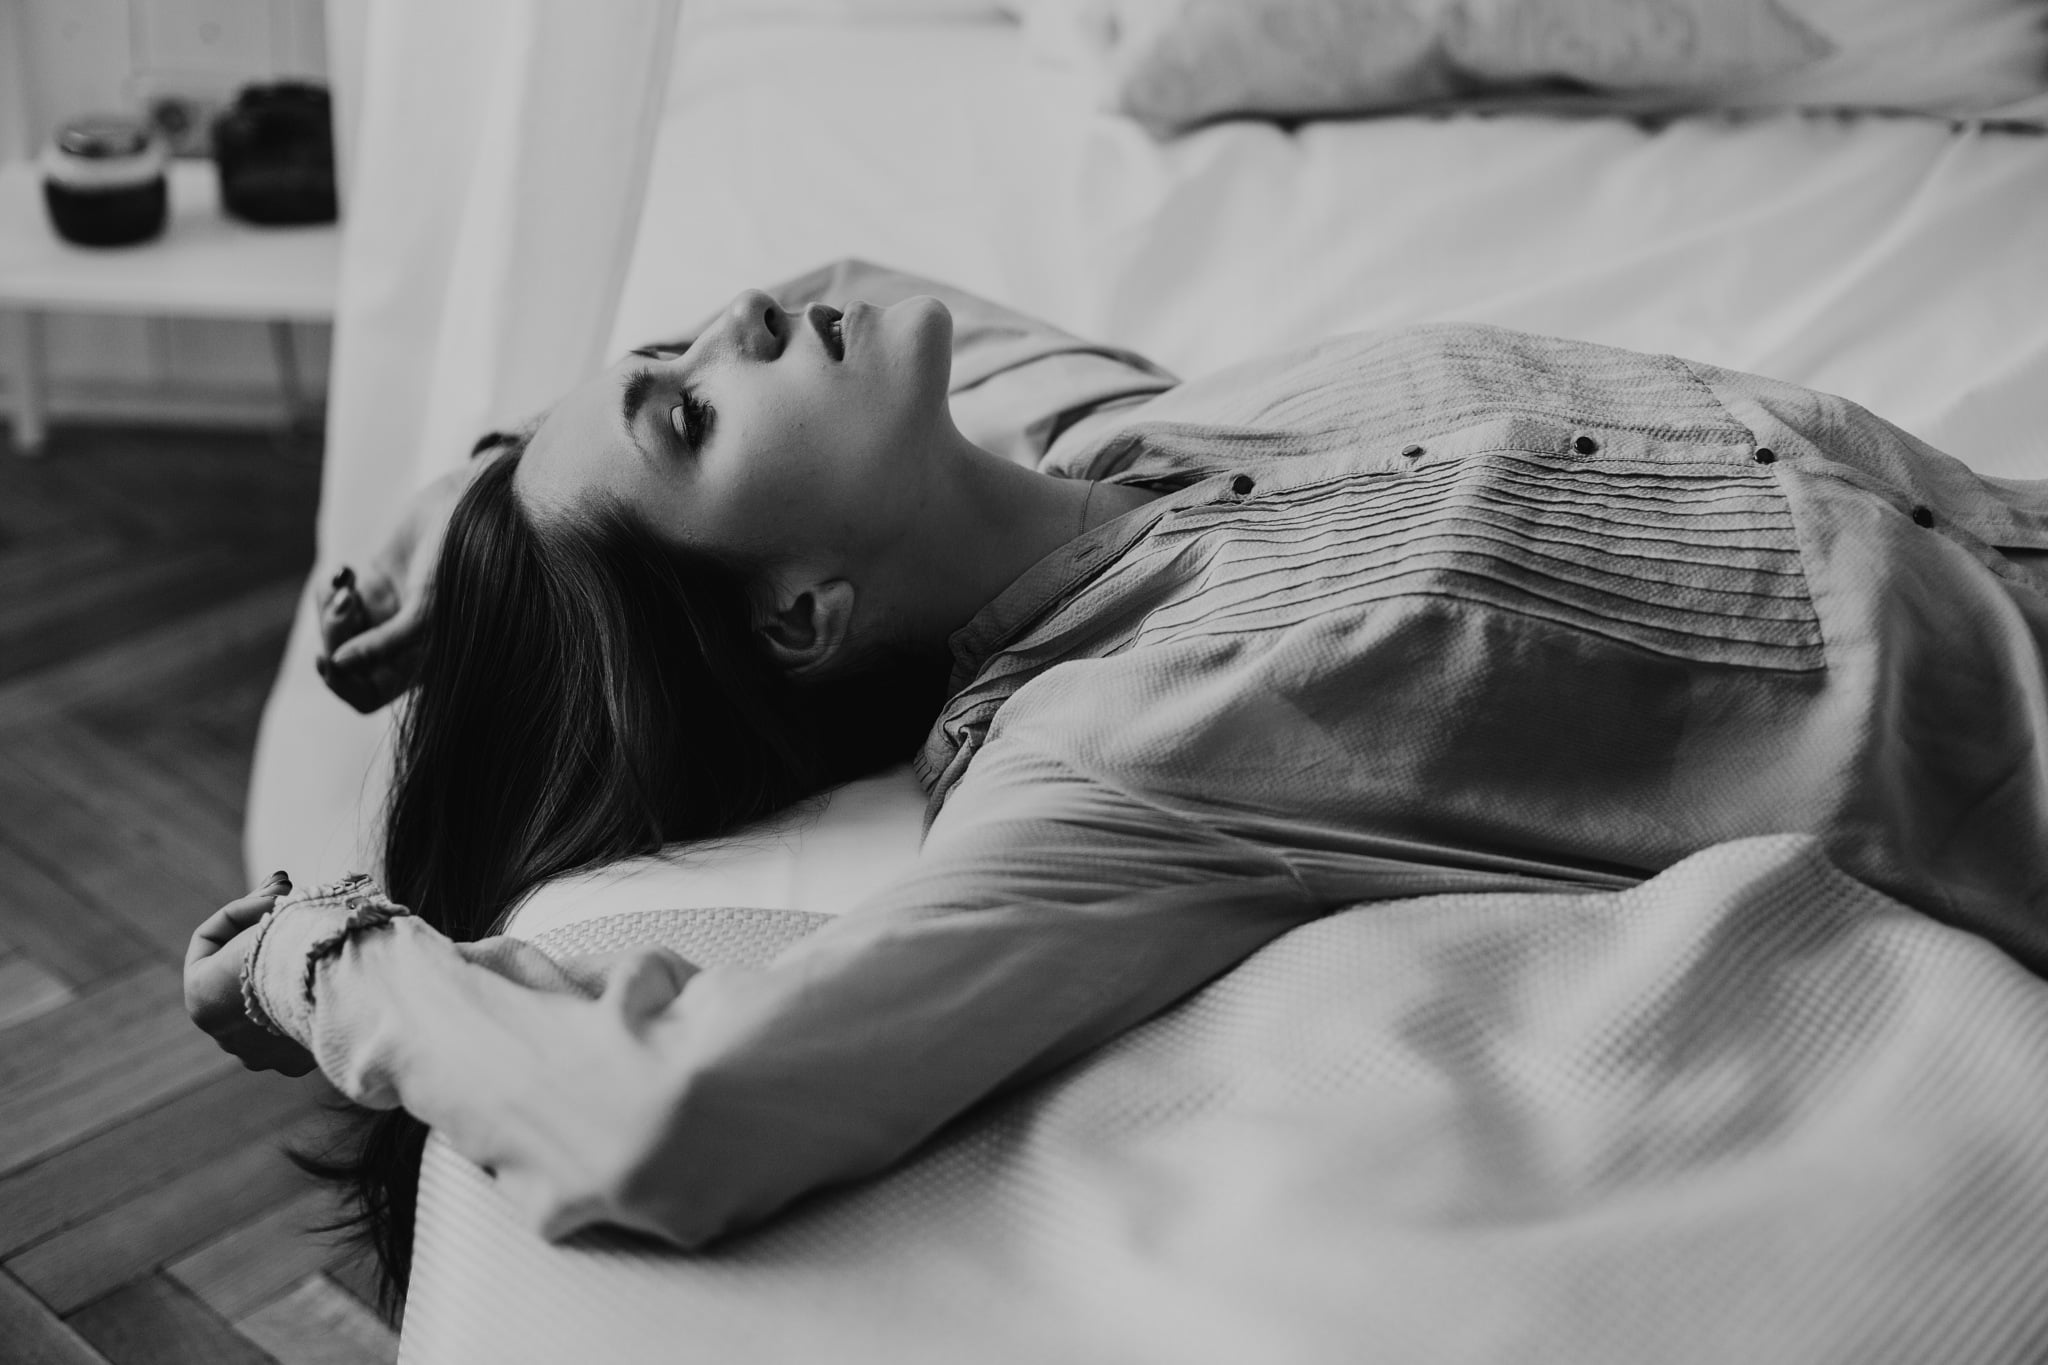 Free Download Hd Wallpaper Women Model Portrait Monochrome Bed In Bed Lying On Back